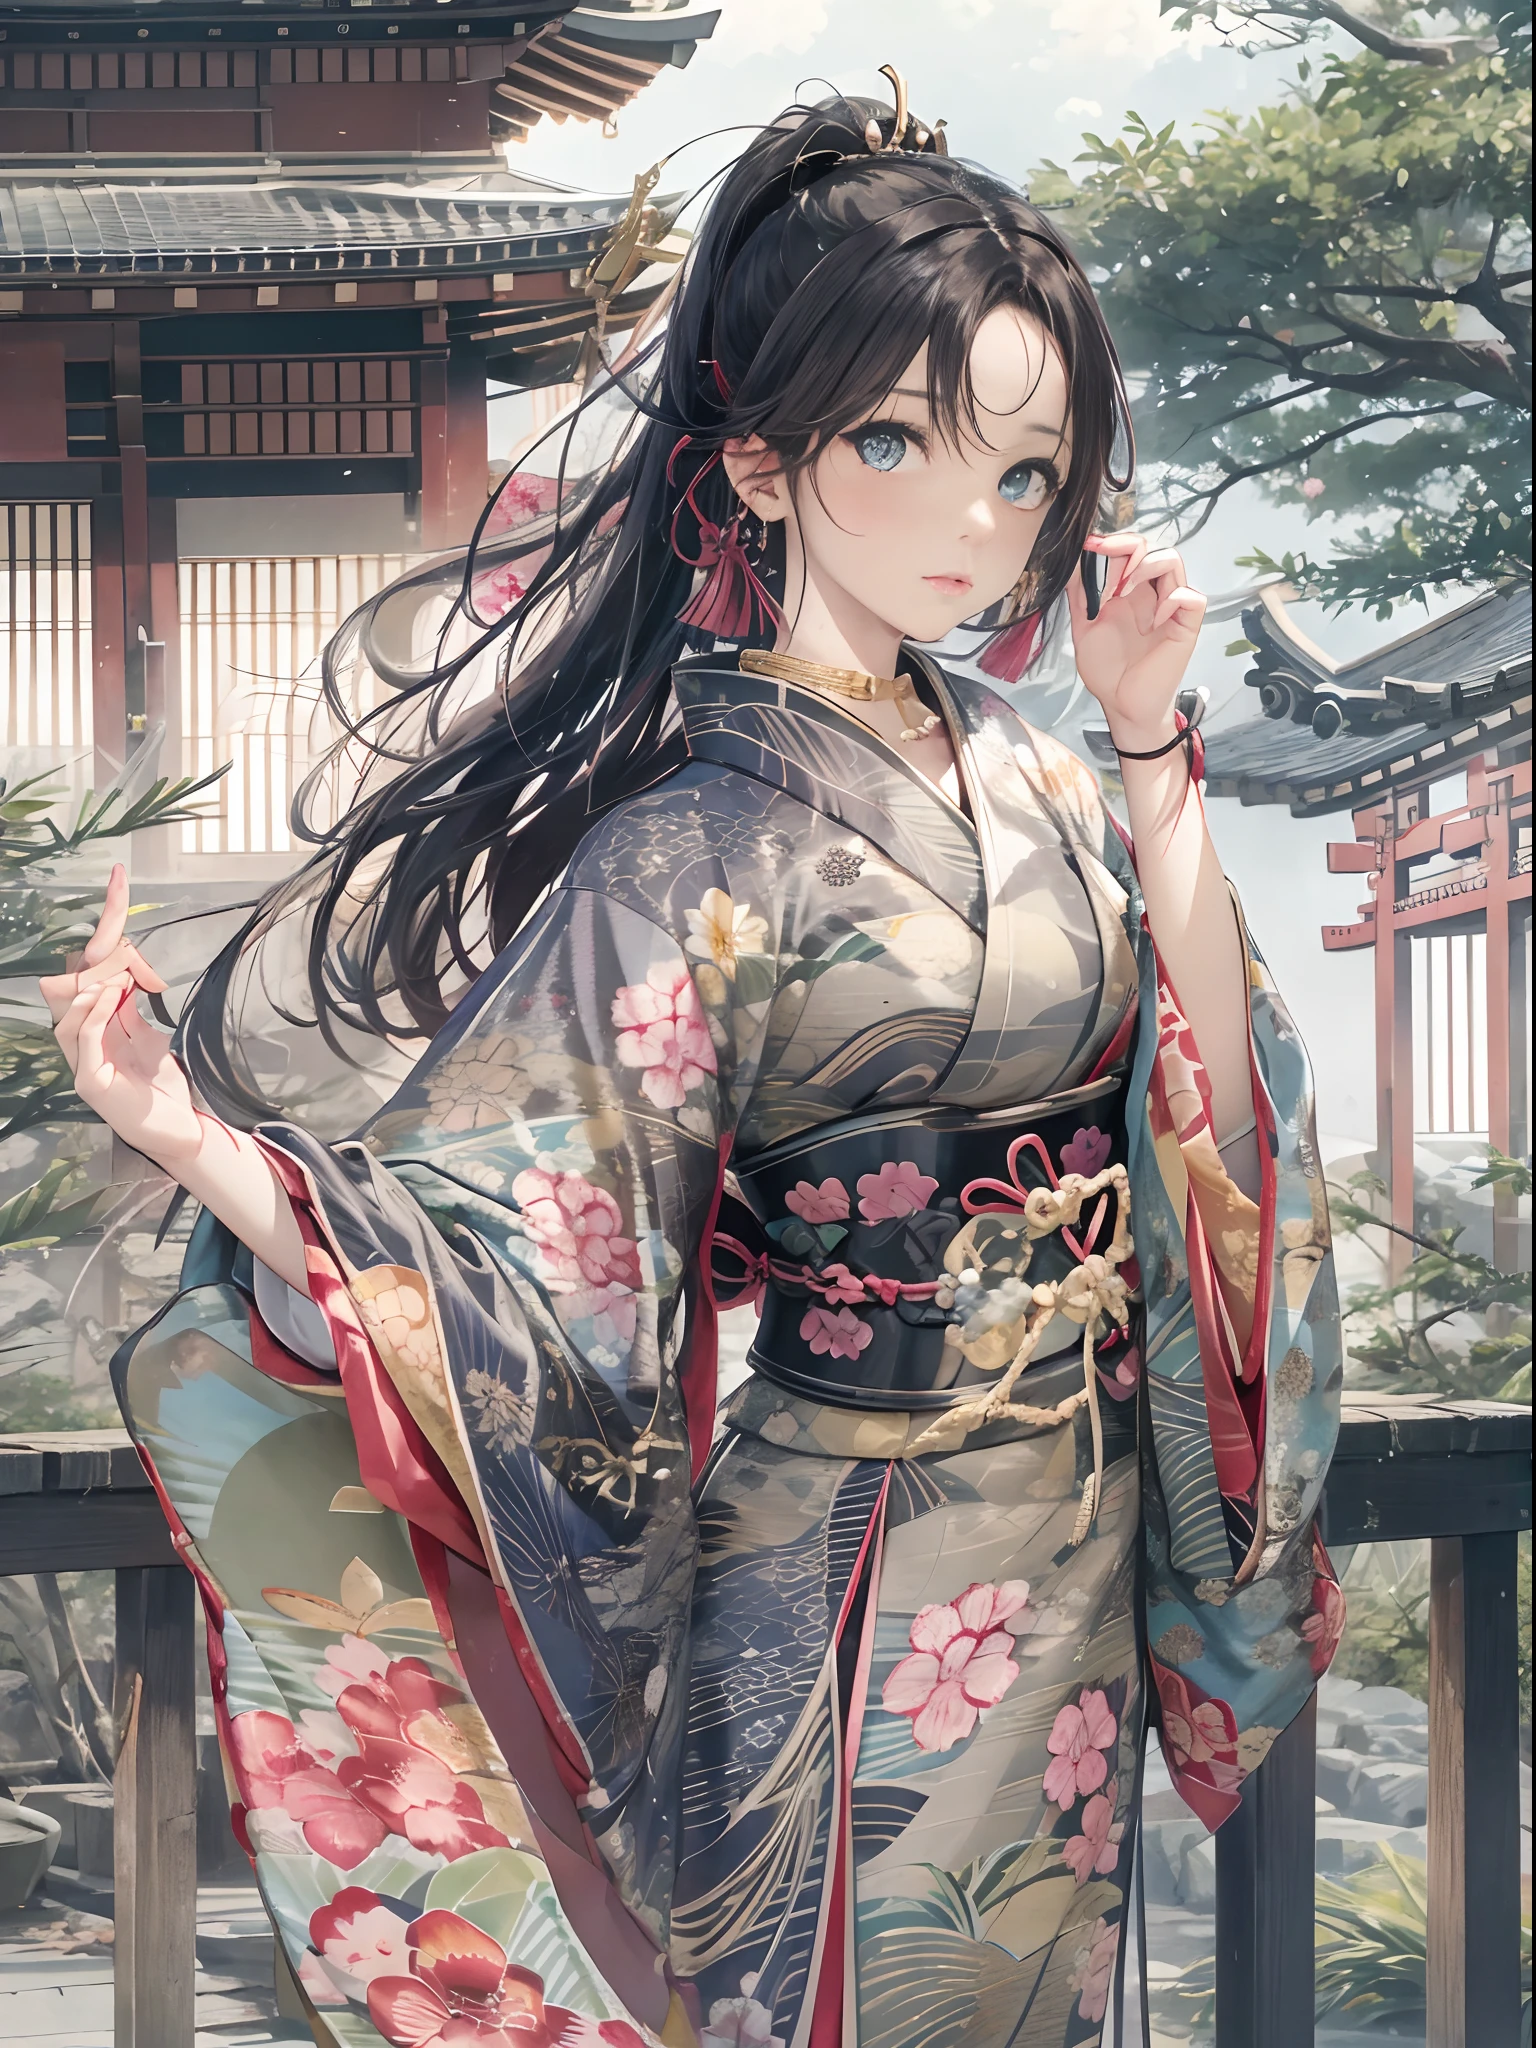 Langer Pferdeschwanz, Augen sind braun, Frau mit schwarzen Haaren、sexy Gesichtsausdruck、Tragen Sie einen grünen Kimono、schöne japanische prinzessin、Kolossal 、Schöne Hände beim Rechnen、Kalkuliert schöne Füße、Anatomie der Hand、japanischer Kimono、Beste Bildqualität,gute Qualität、ＲAW-Bild、Realistisch、Der Hintergrund ist das Innere der Burg von Japan、luxuriös、wunderschön、elegant